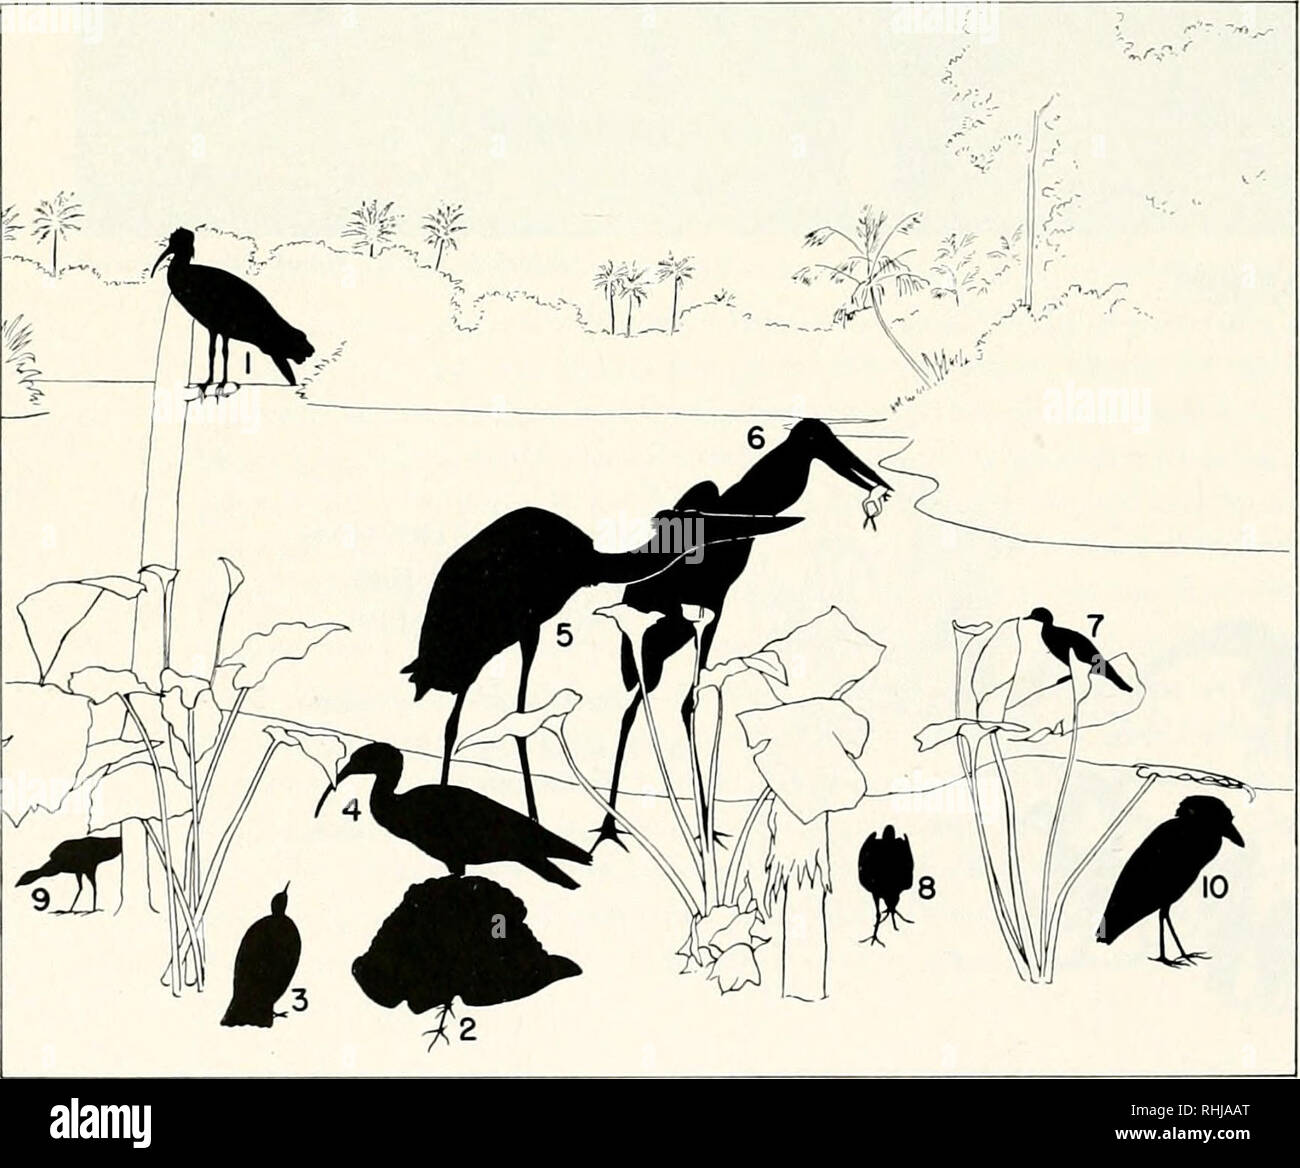 . Vögel der Welt, wie im Lebensraum Gruppen in Chicago Natural History Museum gezeigt. Vögel. Brasilianische WASSERVÖGEL Ausstellung in Chicago das Natural History Museum. Diagramm ILLUSTRA- TING AUSSTELLUNG DER BRASILIANISCHEN WASSER VÖGEL 1. Cayenne ibis [Mesembrinihis cayen - nensis) 2, 3. Sonne - rohrdommel (Eurypyga helias) 4. White-throated Ibis (Theristicus caudatus) 5, 6. Jabiru (Jabiru mycteria) 7. Sonne - grebe (Heliornis Julica) 8, 9. Purple gallinule (porphyrula Marti-Nica) 10. Boot-billed Heron (Cochlearius Cochlea-Rius) I. Bitte beachten Sie, dass diese Bilder aus gescannten Seite Bilder, digitall wurden extrahiert werden Stockfoto